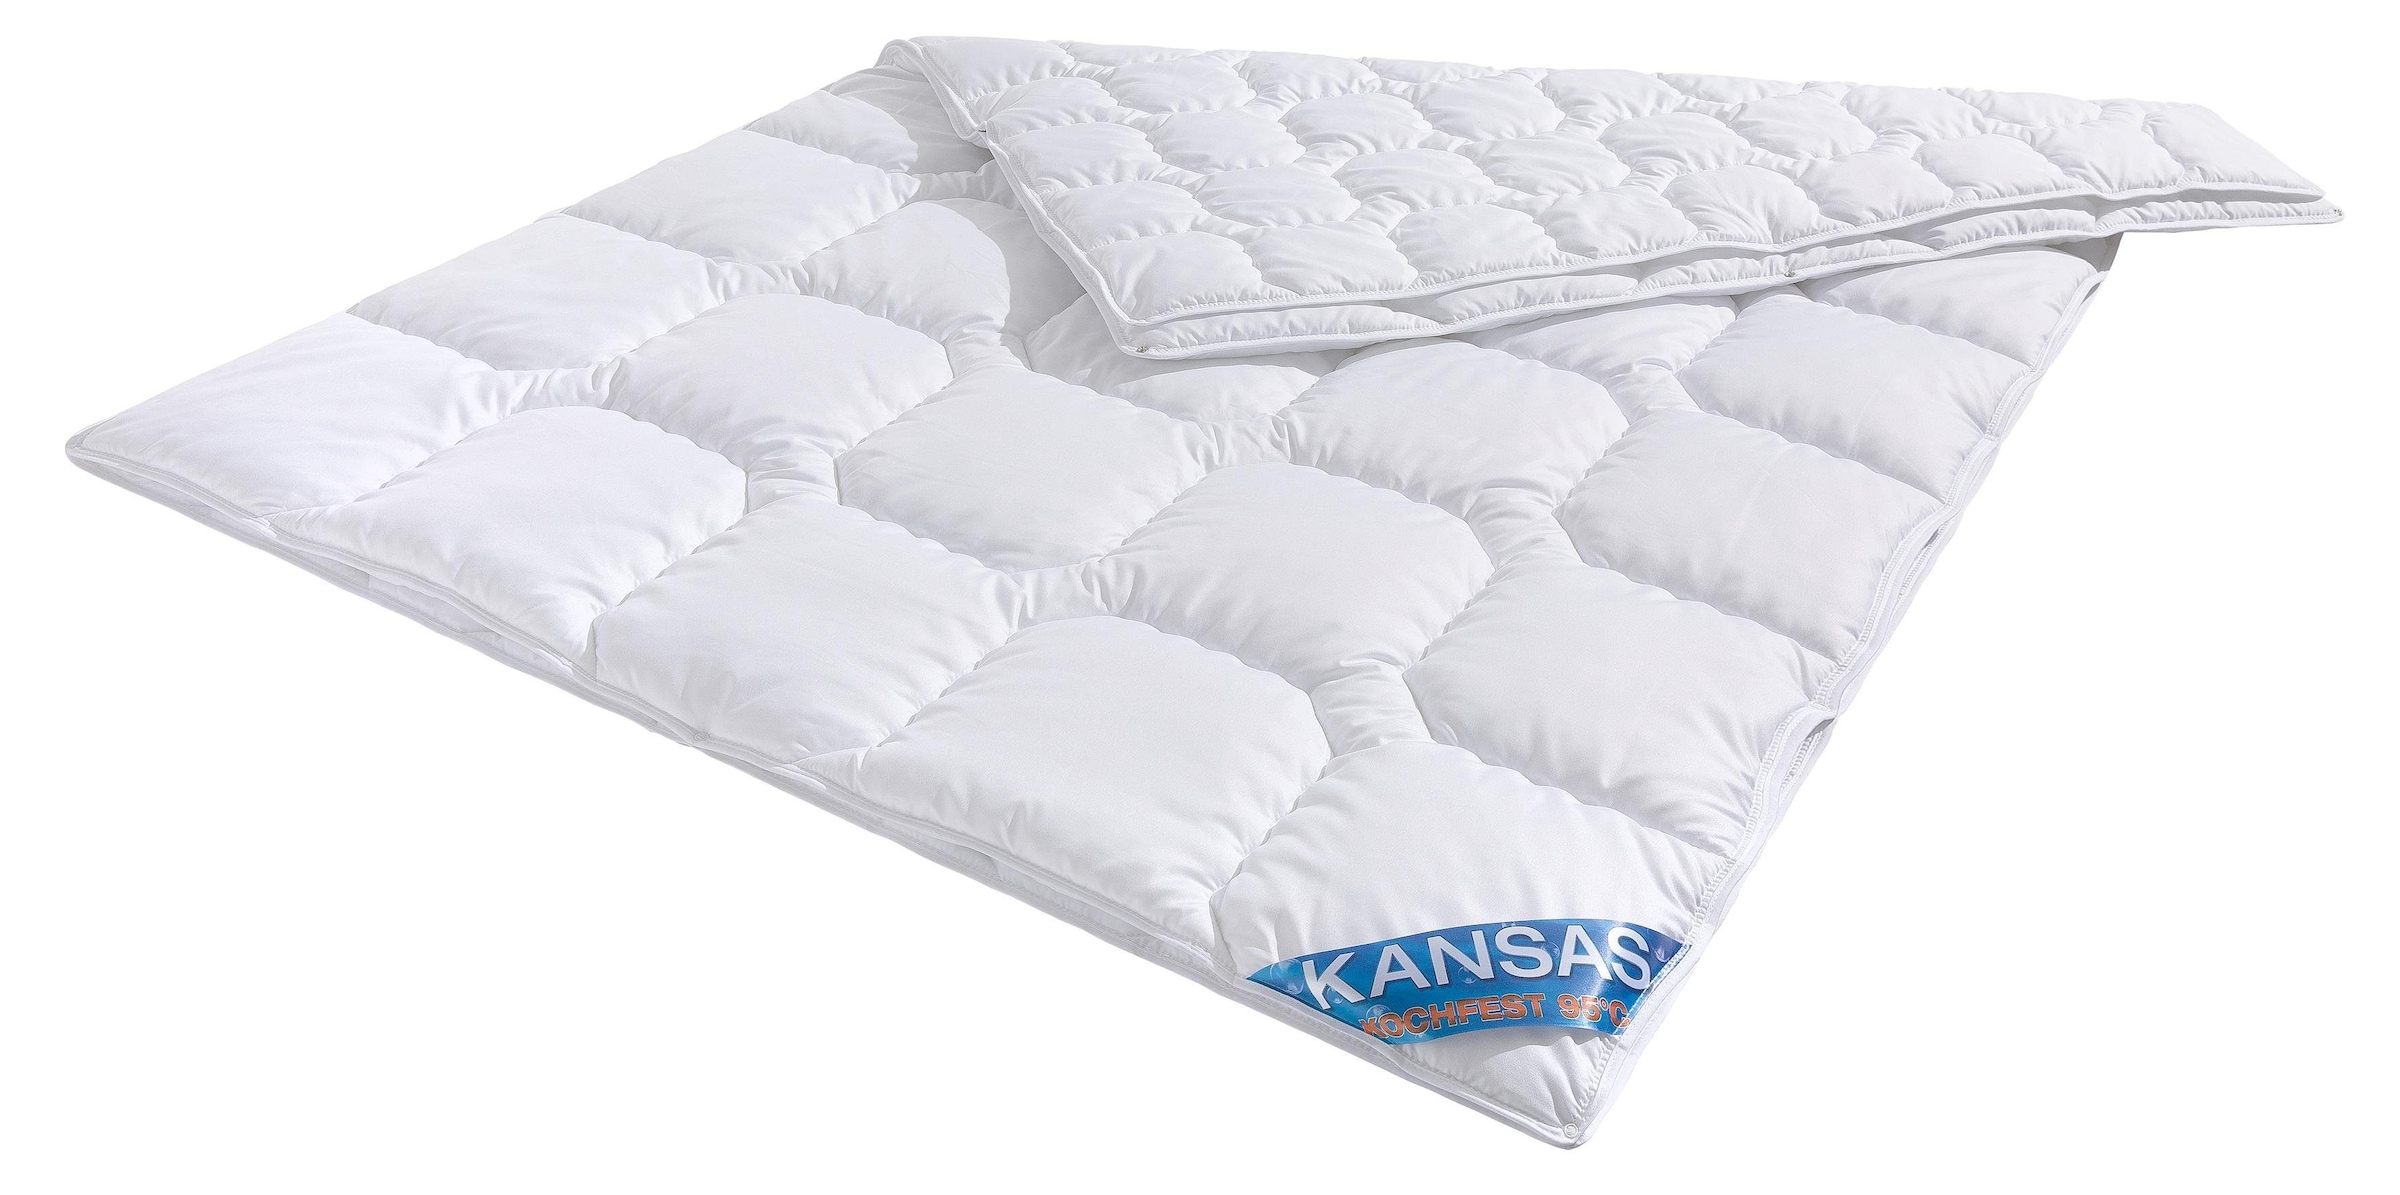 f.a.n. Schlafkomfort Microfaserbettdecke »Kansas«, 4-Jahreszeiten, (1 St.), Bettdecke in 135x200 oder 155x220 cm, Wärmeklasse 4-Jahreszeiten